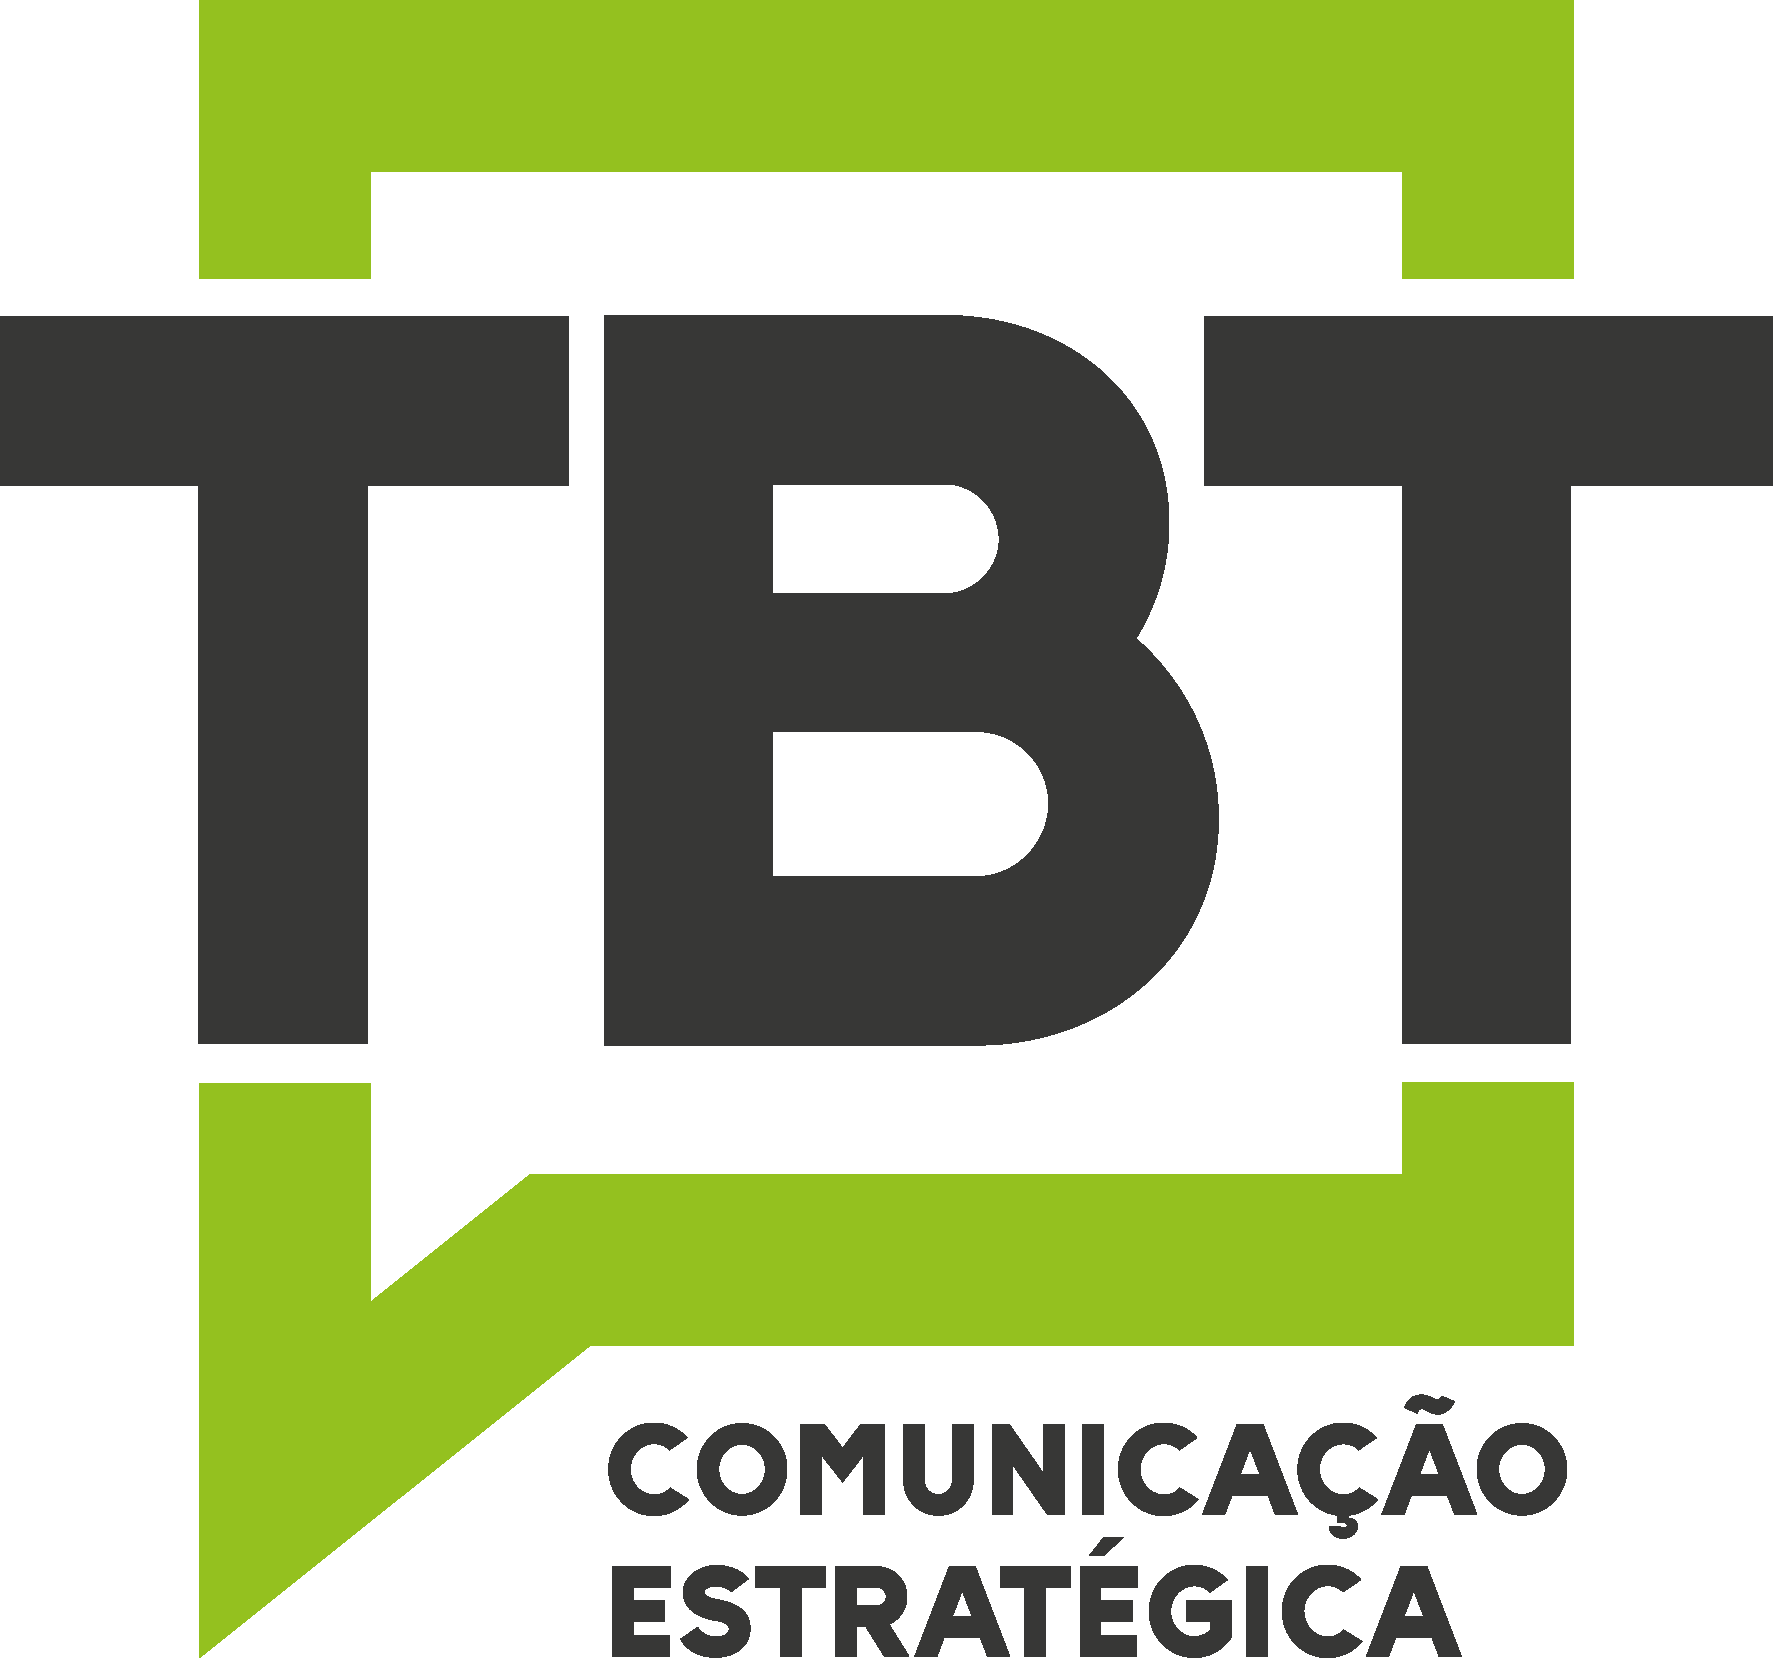 (c) Tbtcomunicacao.com.br